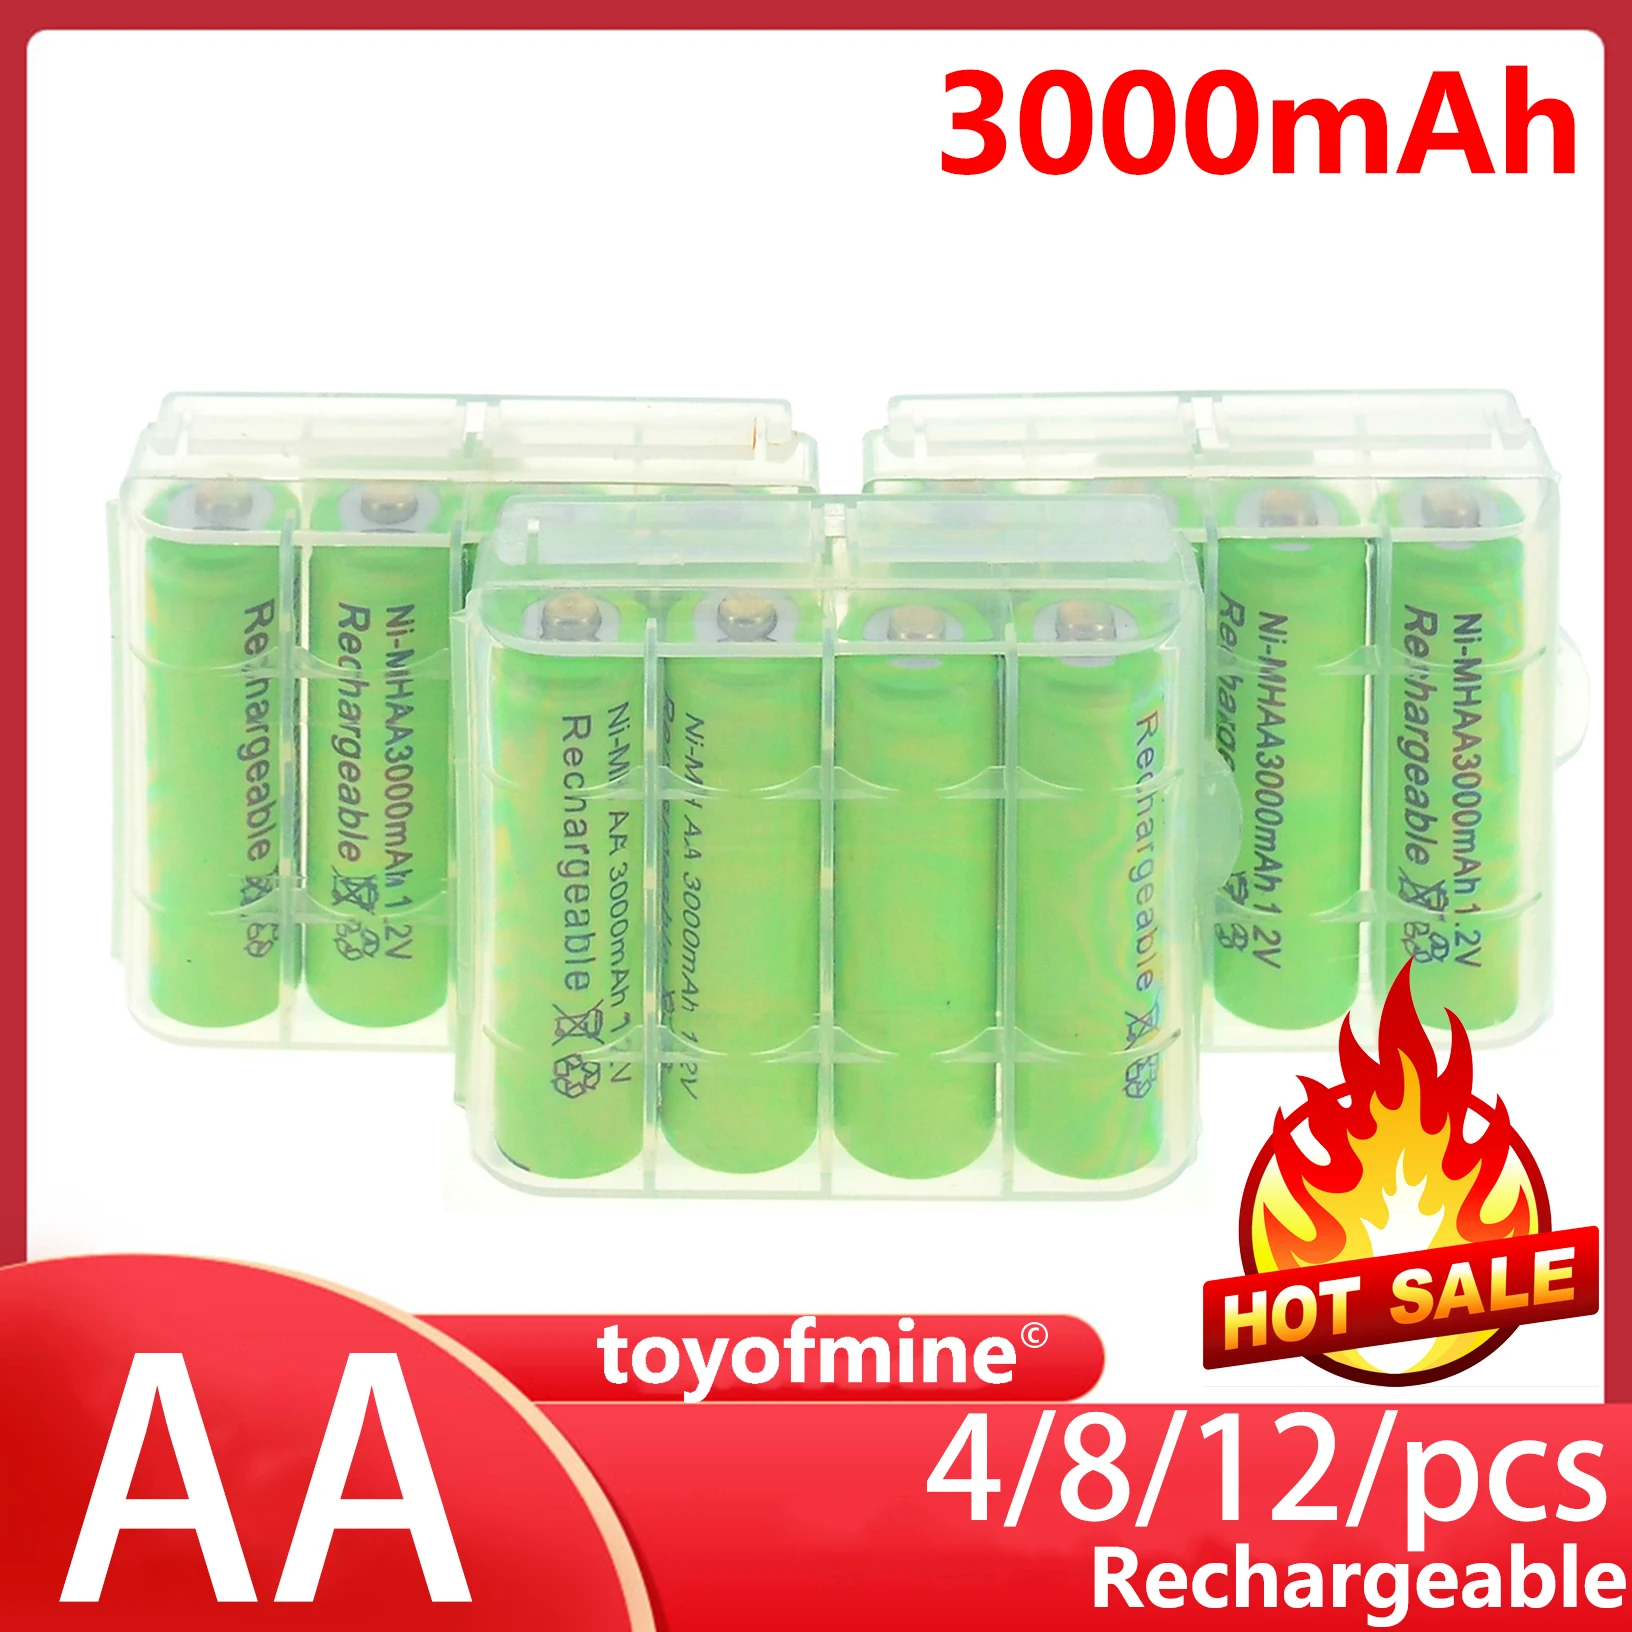 Фото 4/8/12psc AA 3000mAh 1 2 V аккумуляторная батарея Ni-MH зеленый цвет с Чехол | Электроника